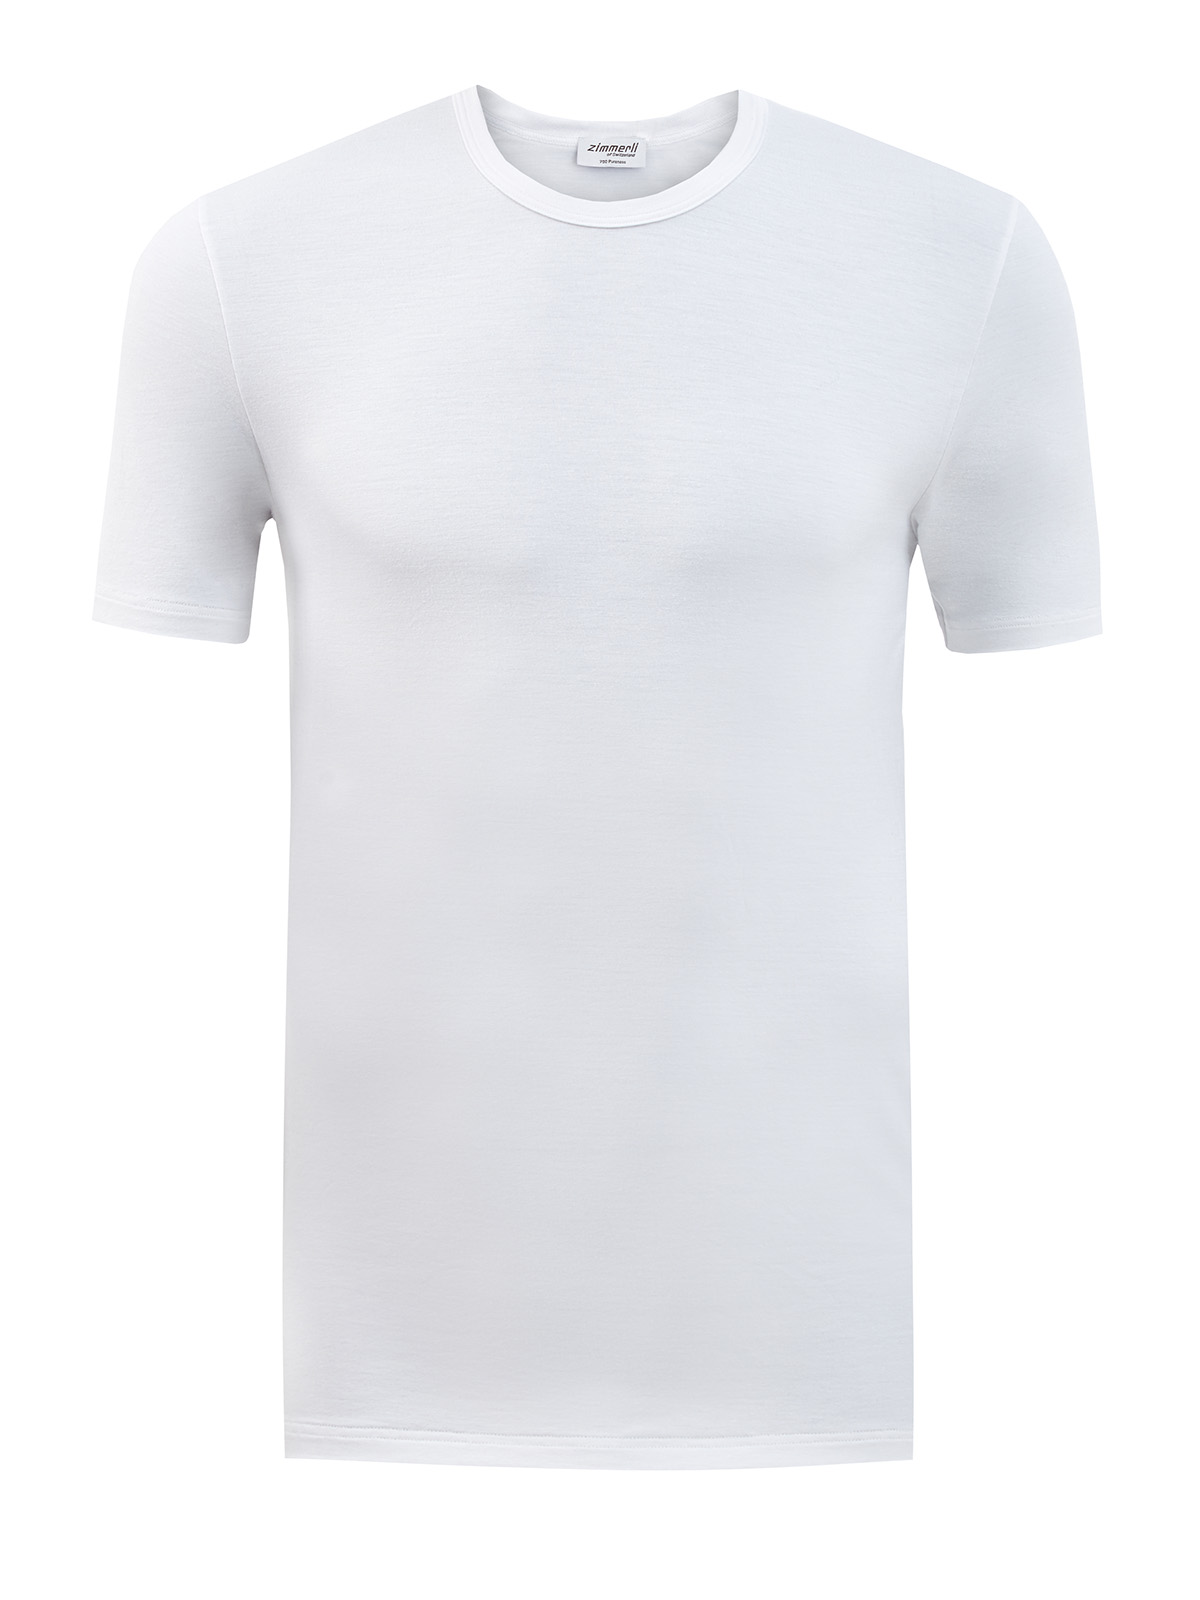 Облегающая футболка из эластичной вискозной ткани